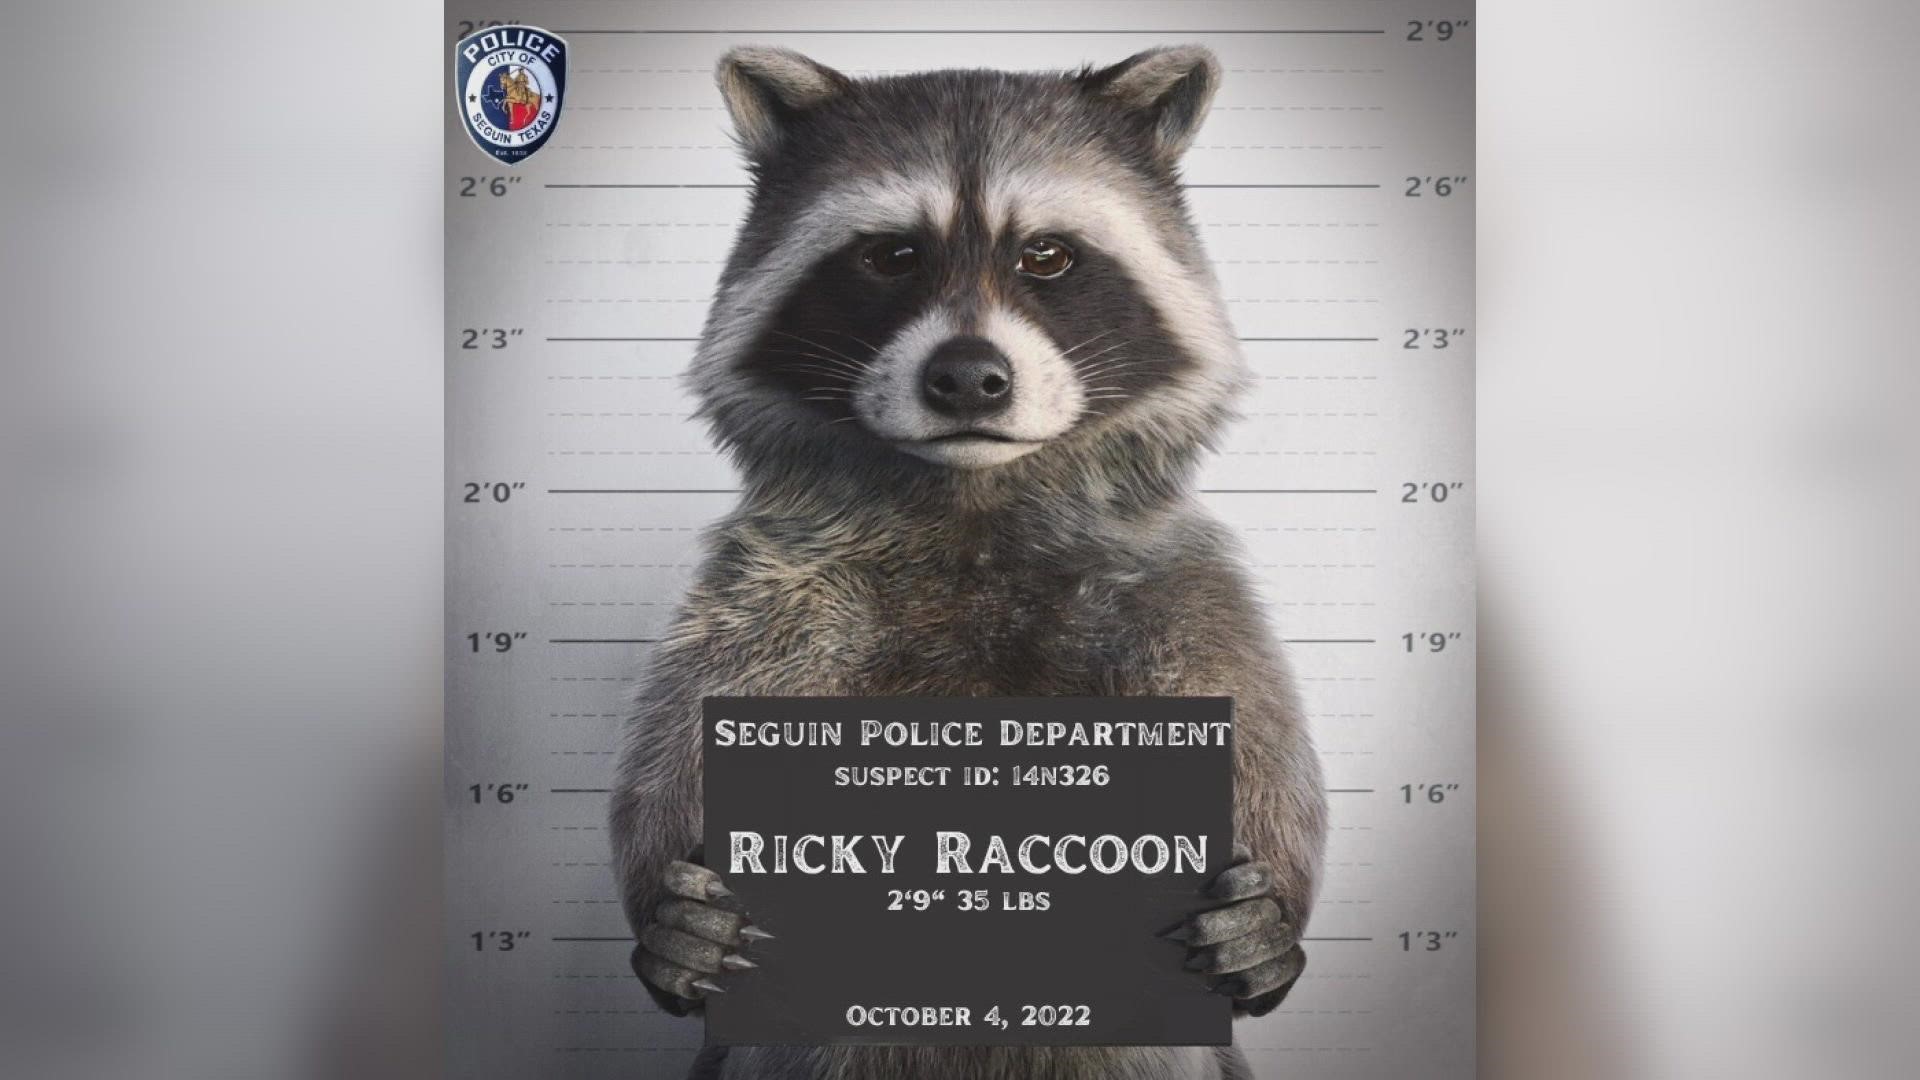 Ricky Raccoon has been taken into custody, thankfully.